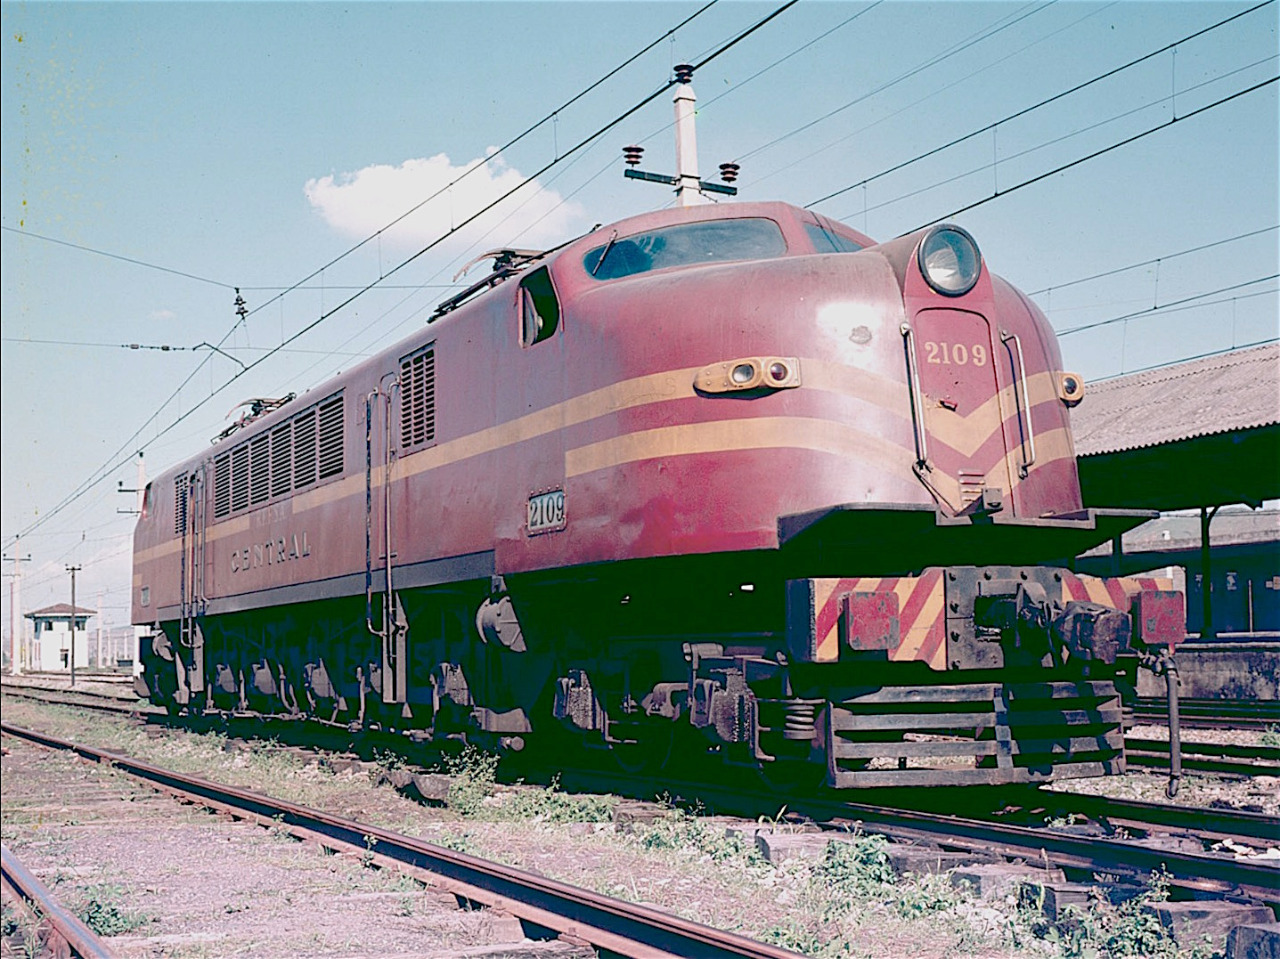 General 1280x959 train locomotive R.F.F.S.A